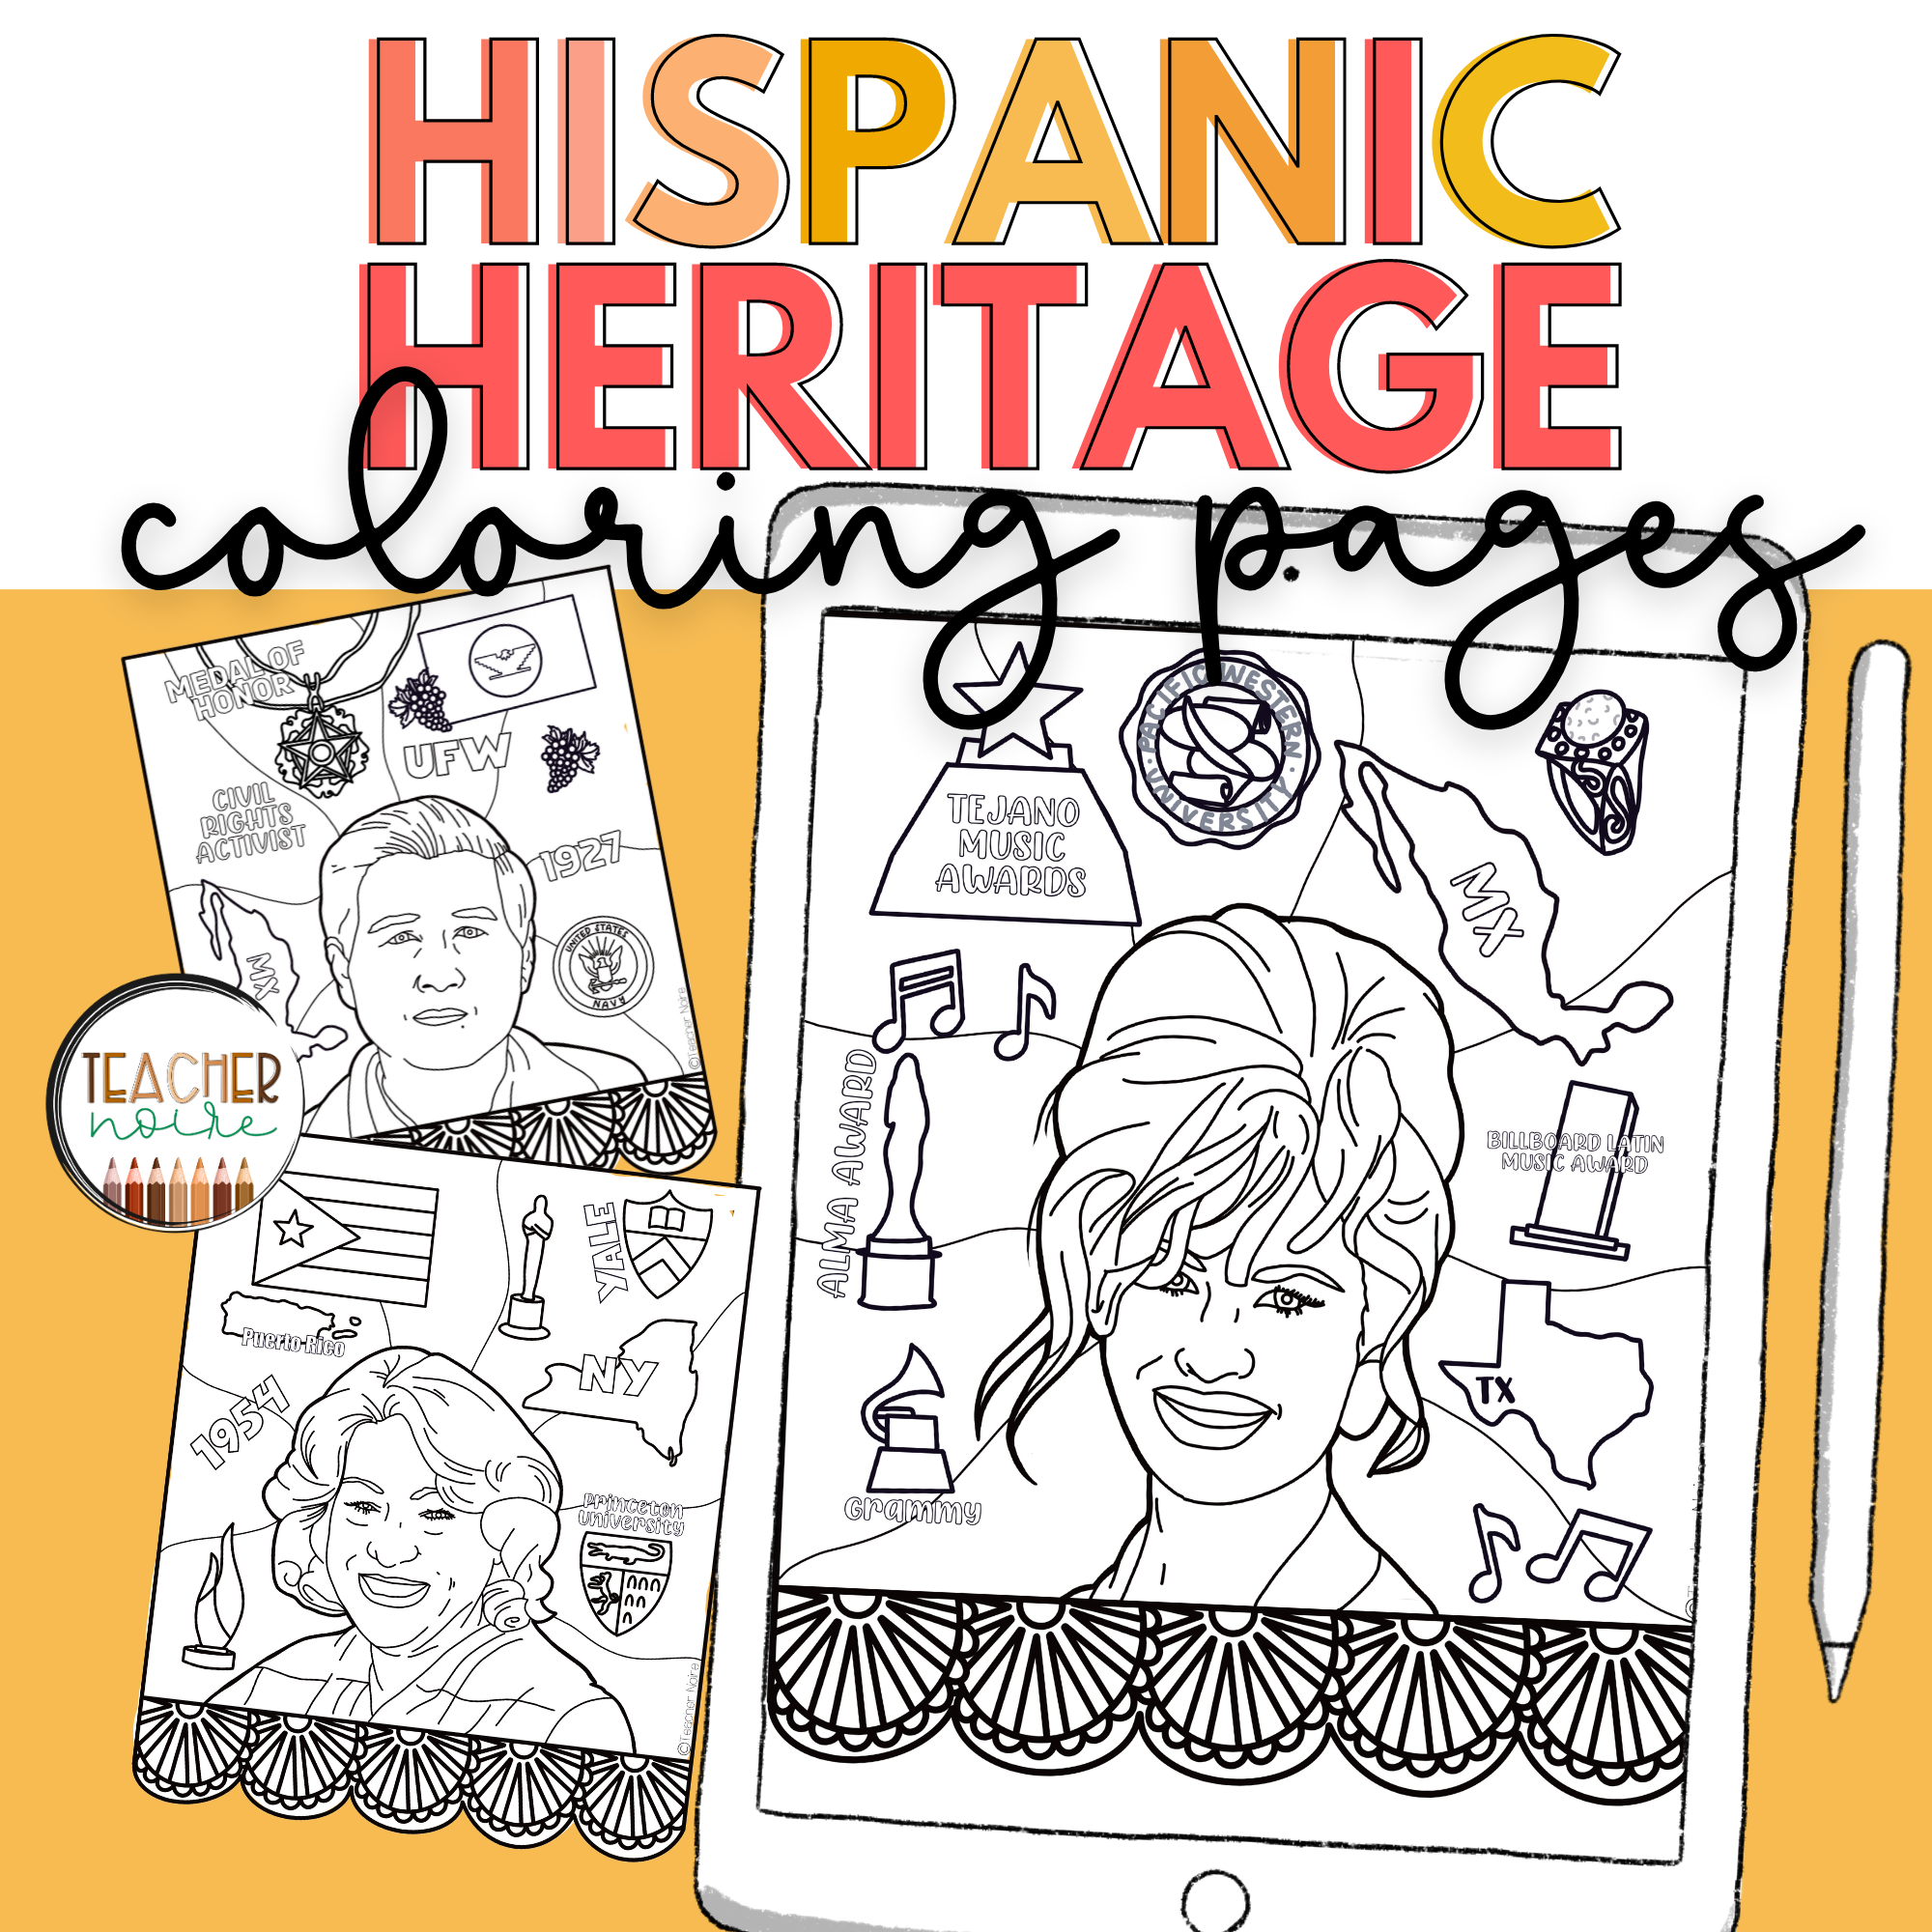 Hispanic heritage coloring pages â teacher noire